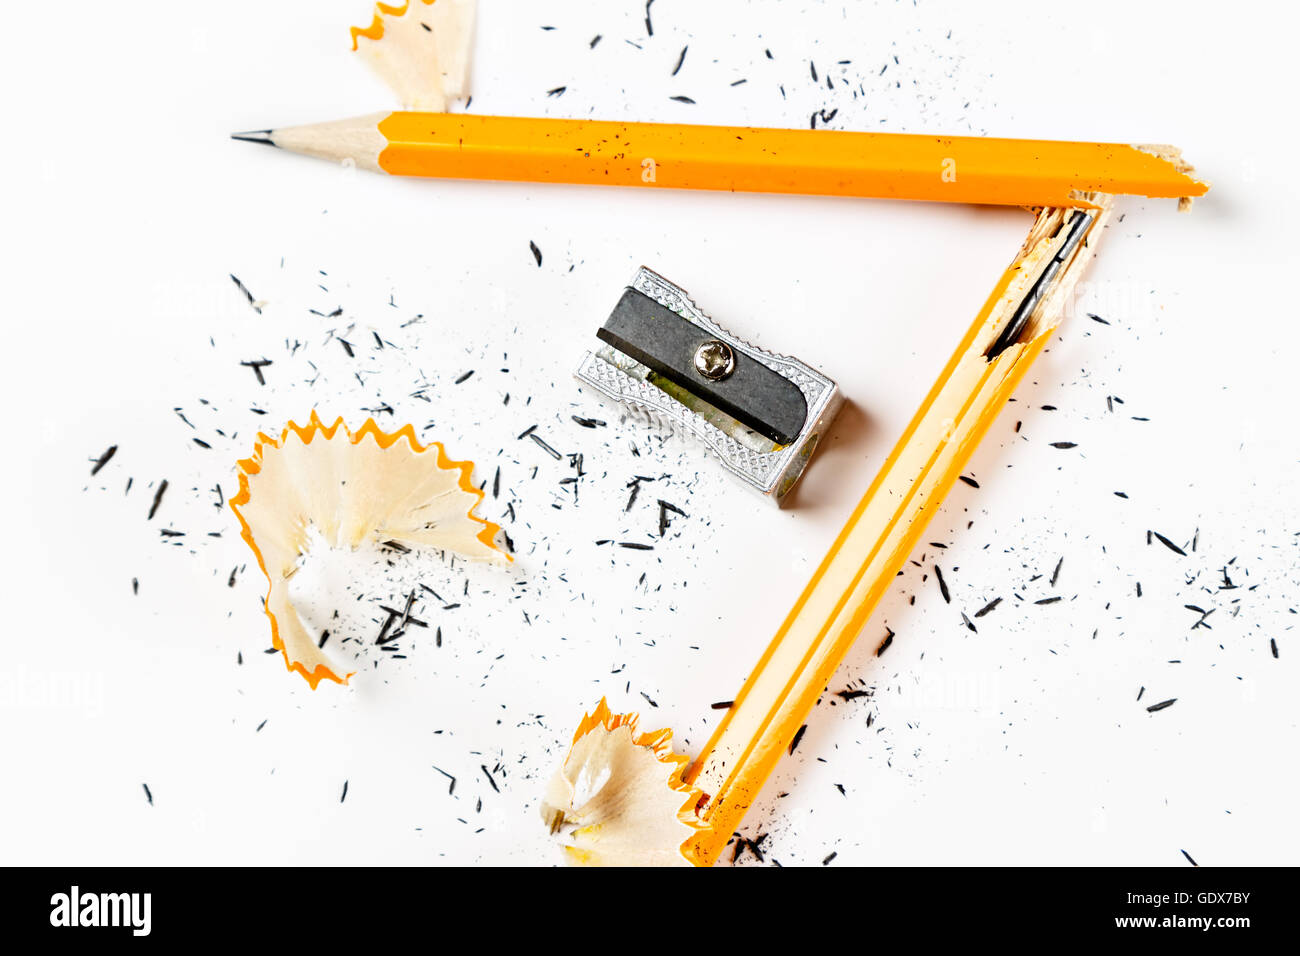 Bleistift, Bleistift und Anspitzer Metallspäne auf weißem Hintergrund. Horizontales Bild. Stockfoto